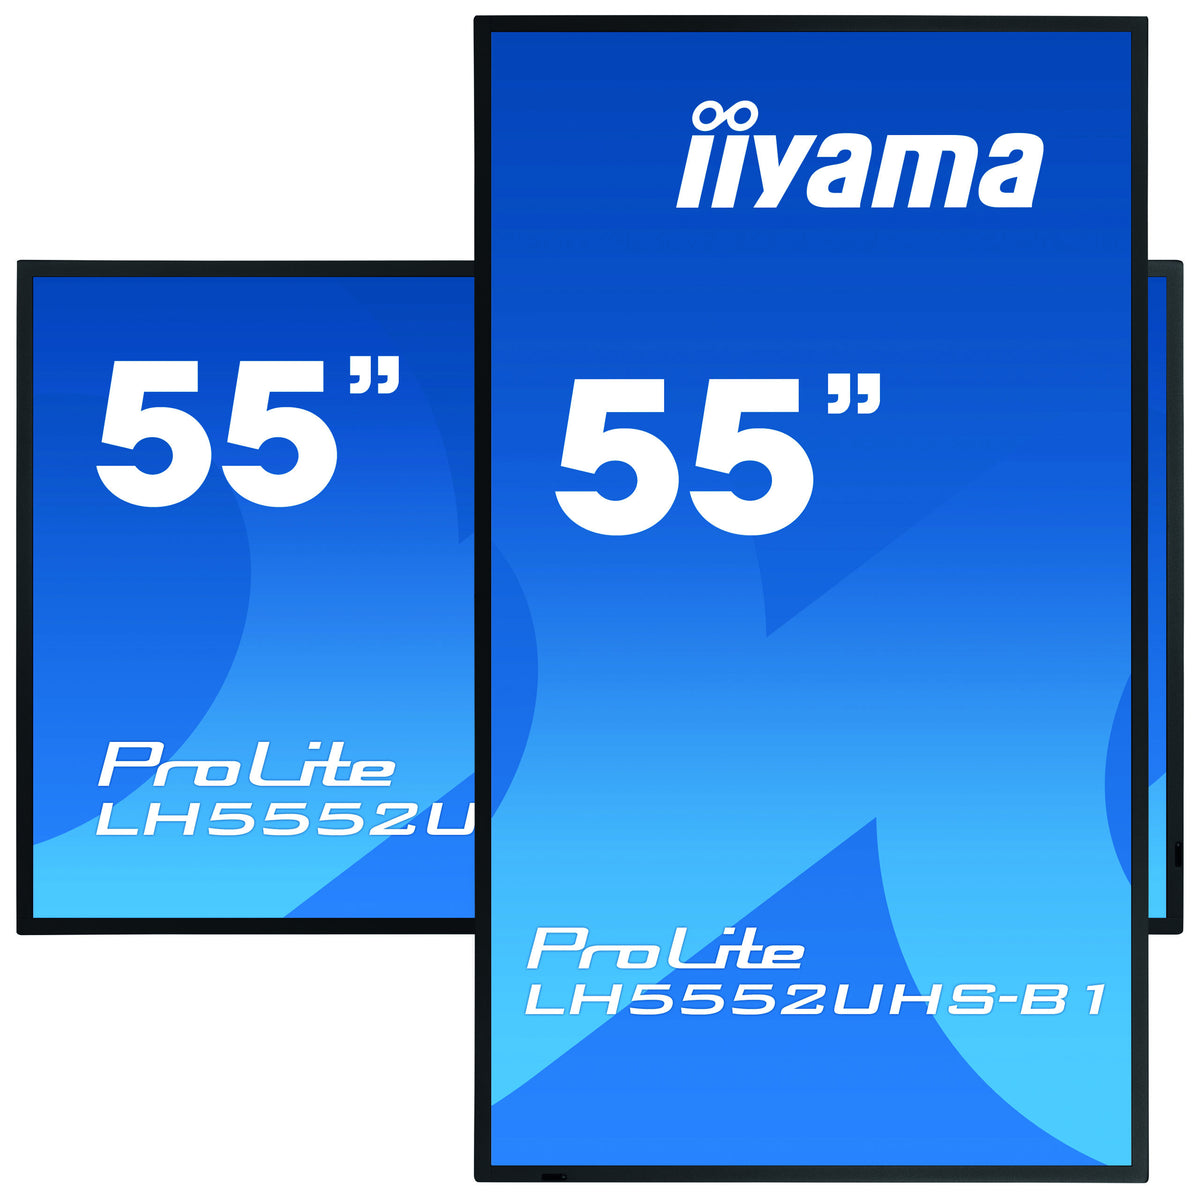 iiyama ProLite LH5552UHS-B1 - Pantalla LCD de clase diagonal de 55" (54,6" visibles) con retroiluminación LED - Señalización digital - Android - 4K UHD (2160p) 3840 x 2160 - Negro opaco